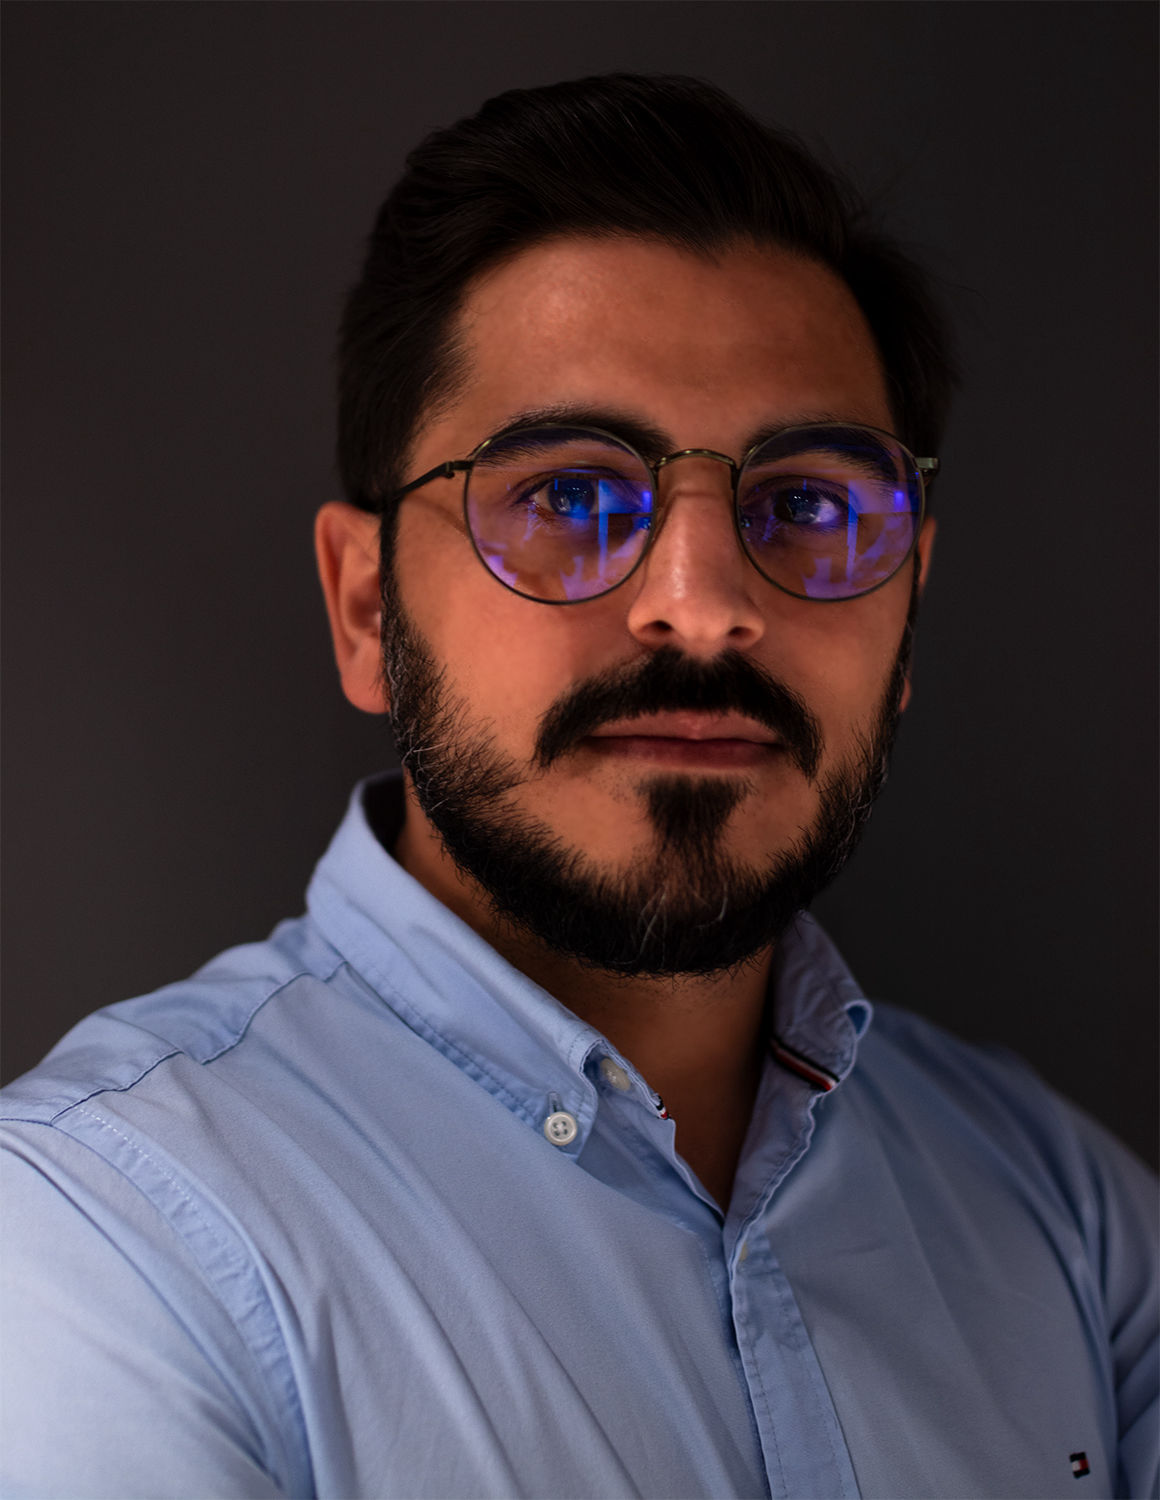 Business Portrait von einem Mann mit Bart, Hilfiger Hemd und Brille